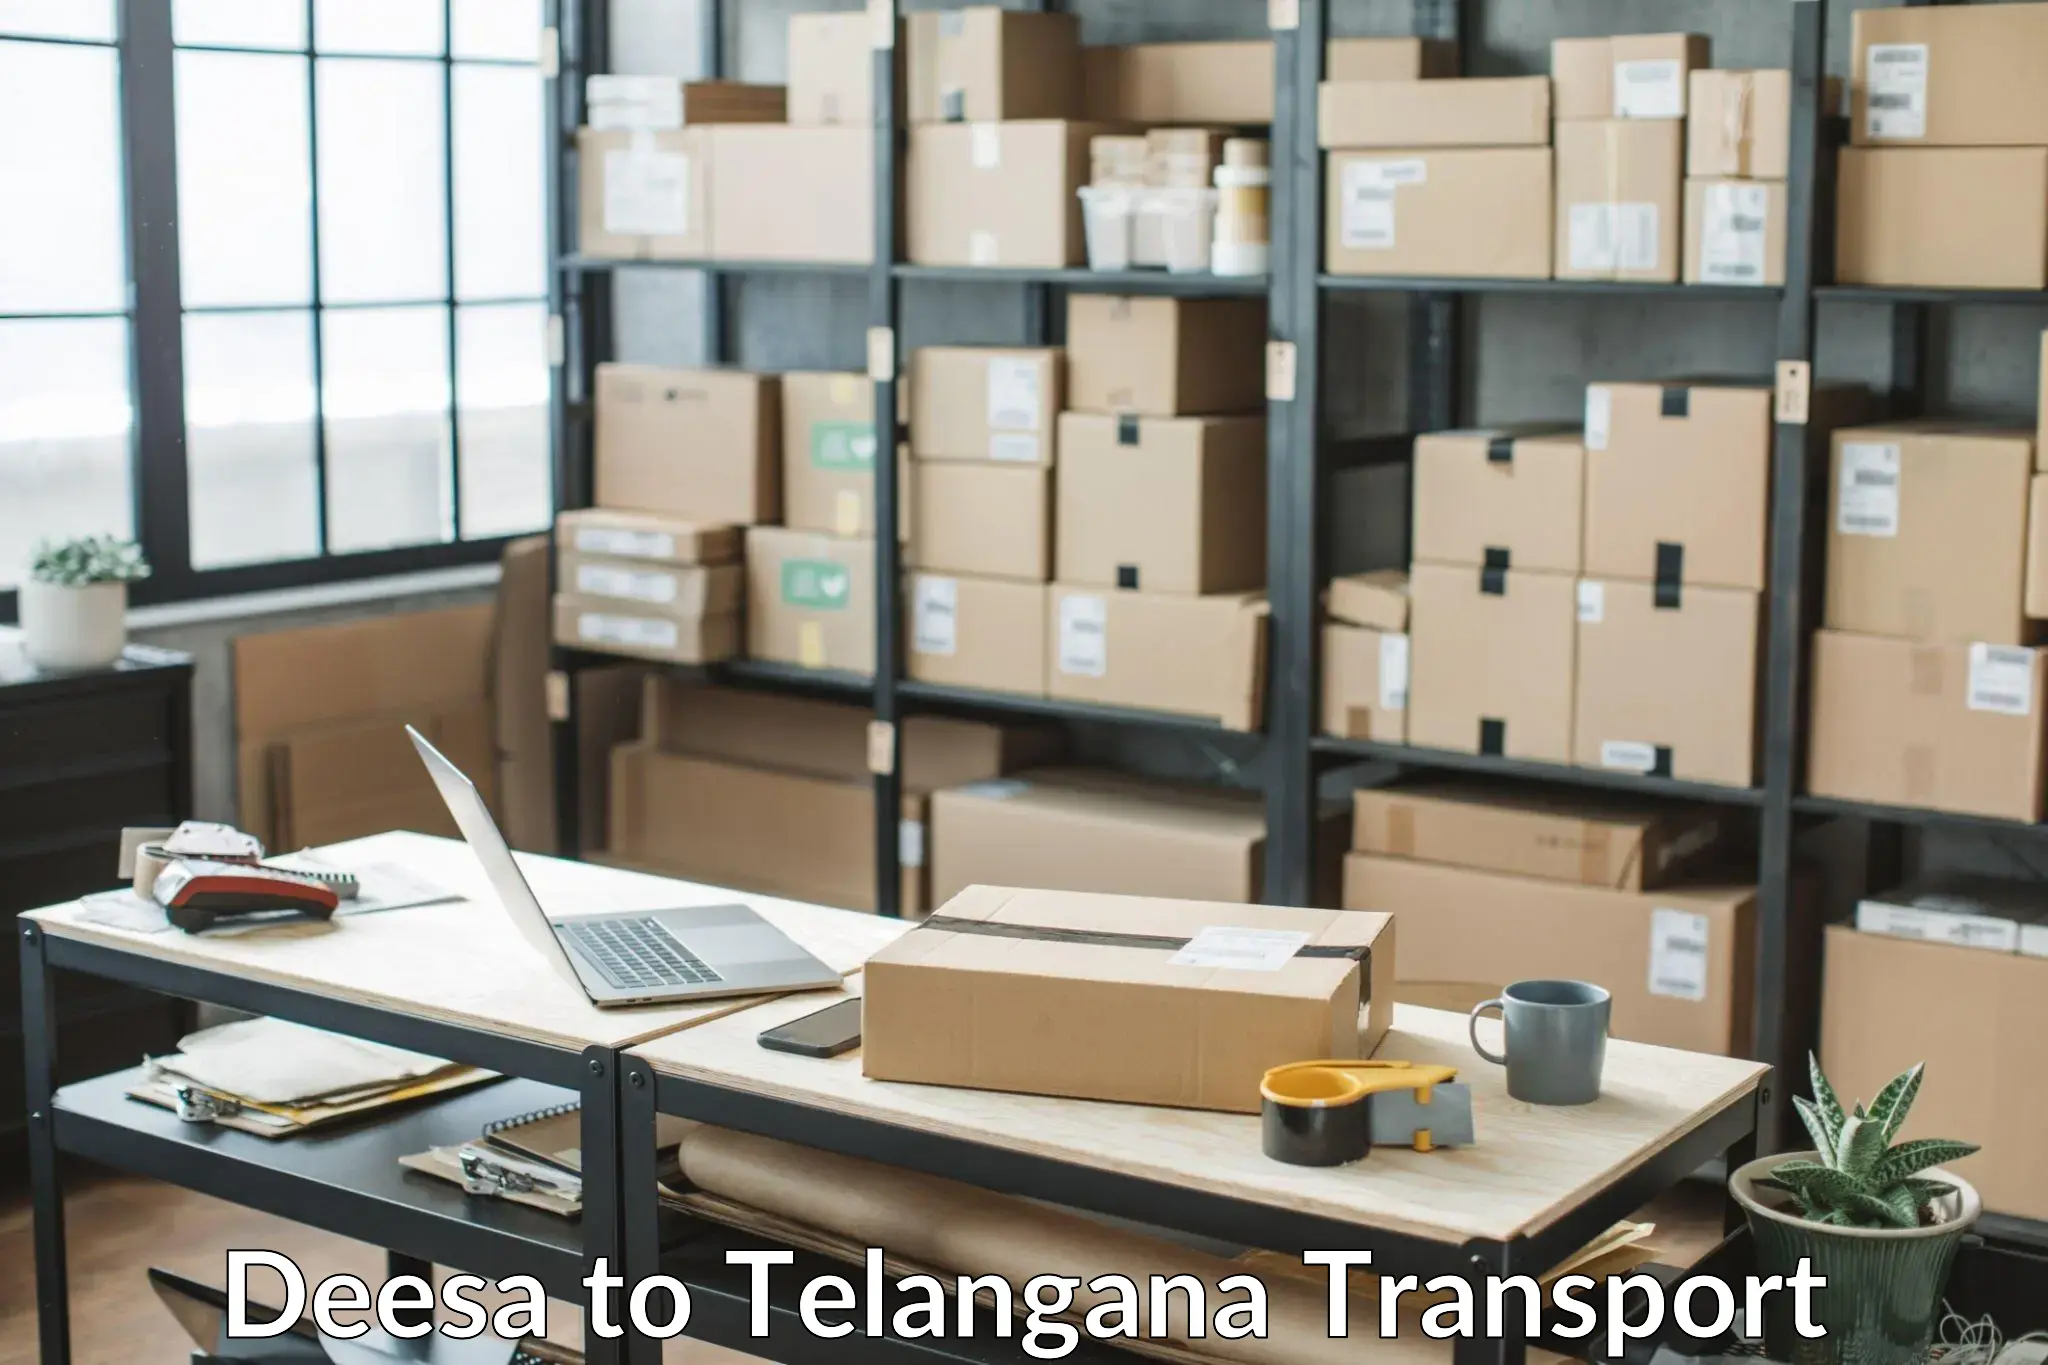 Daily parcel service transport Deesa to Vikarabad